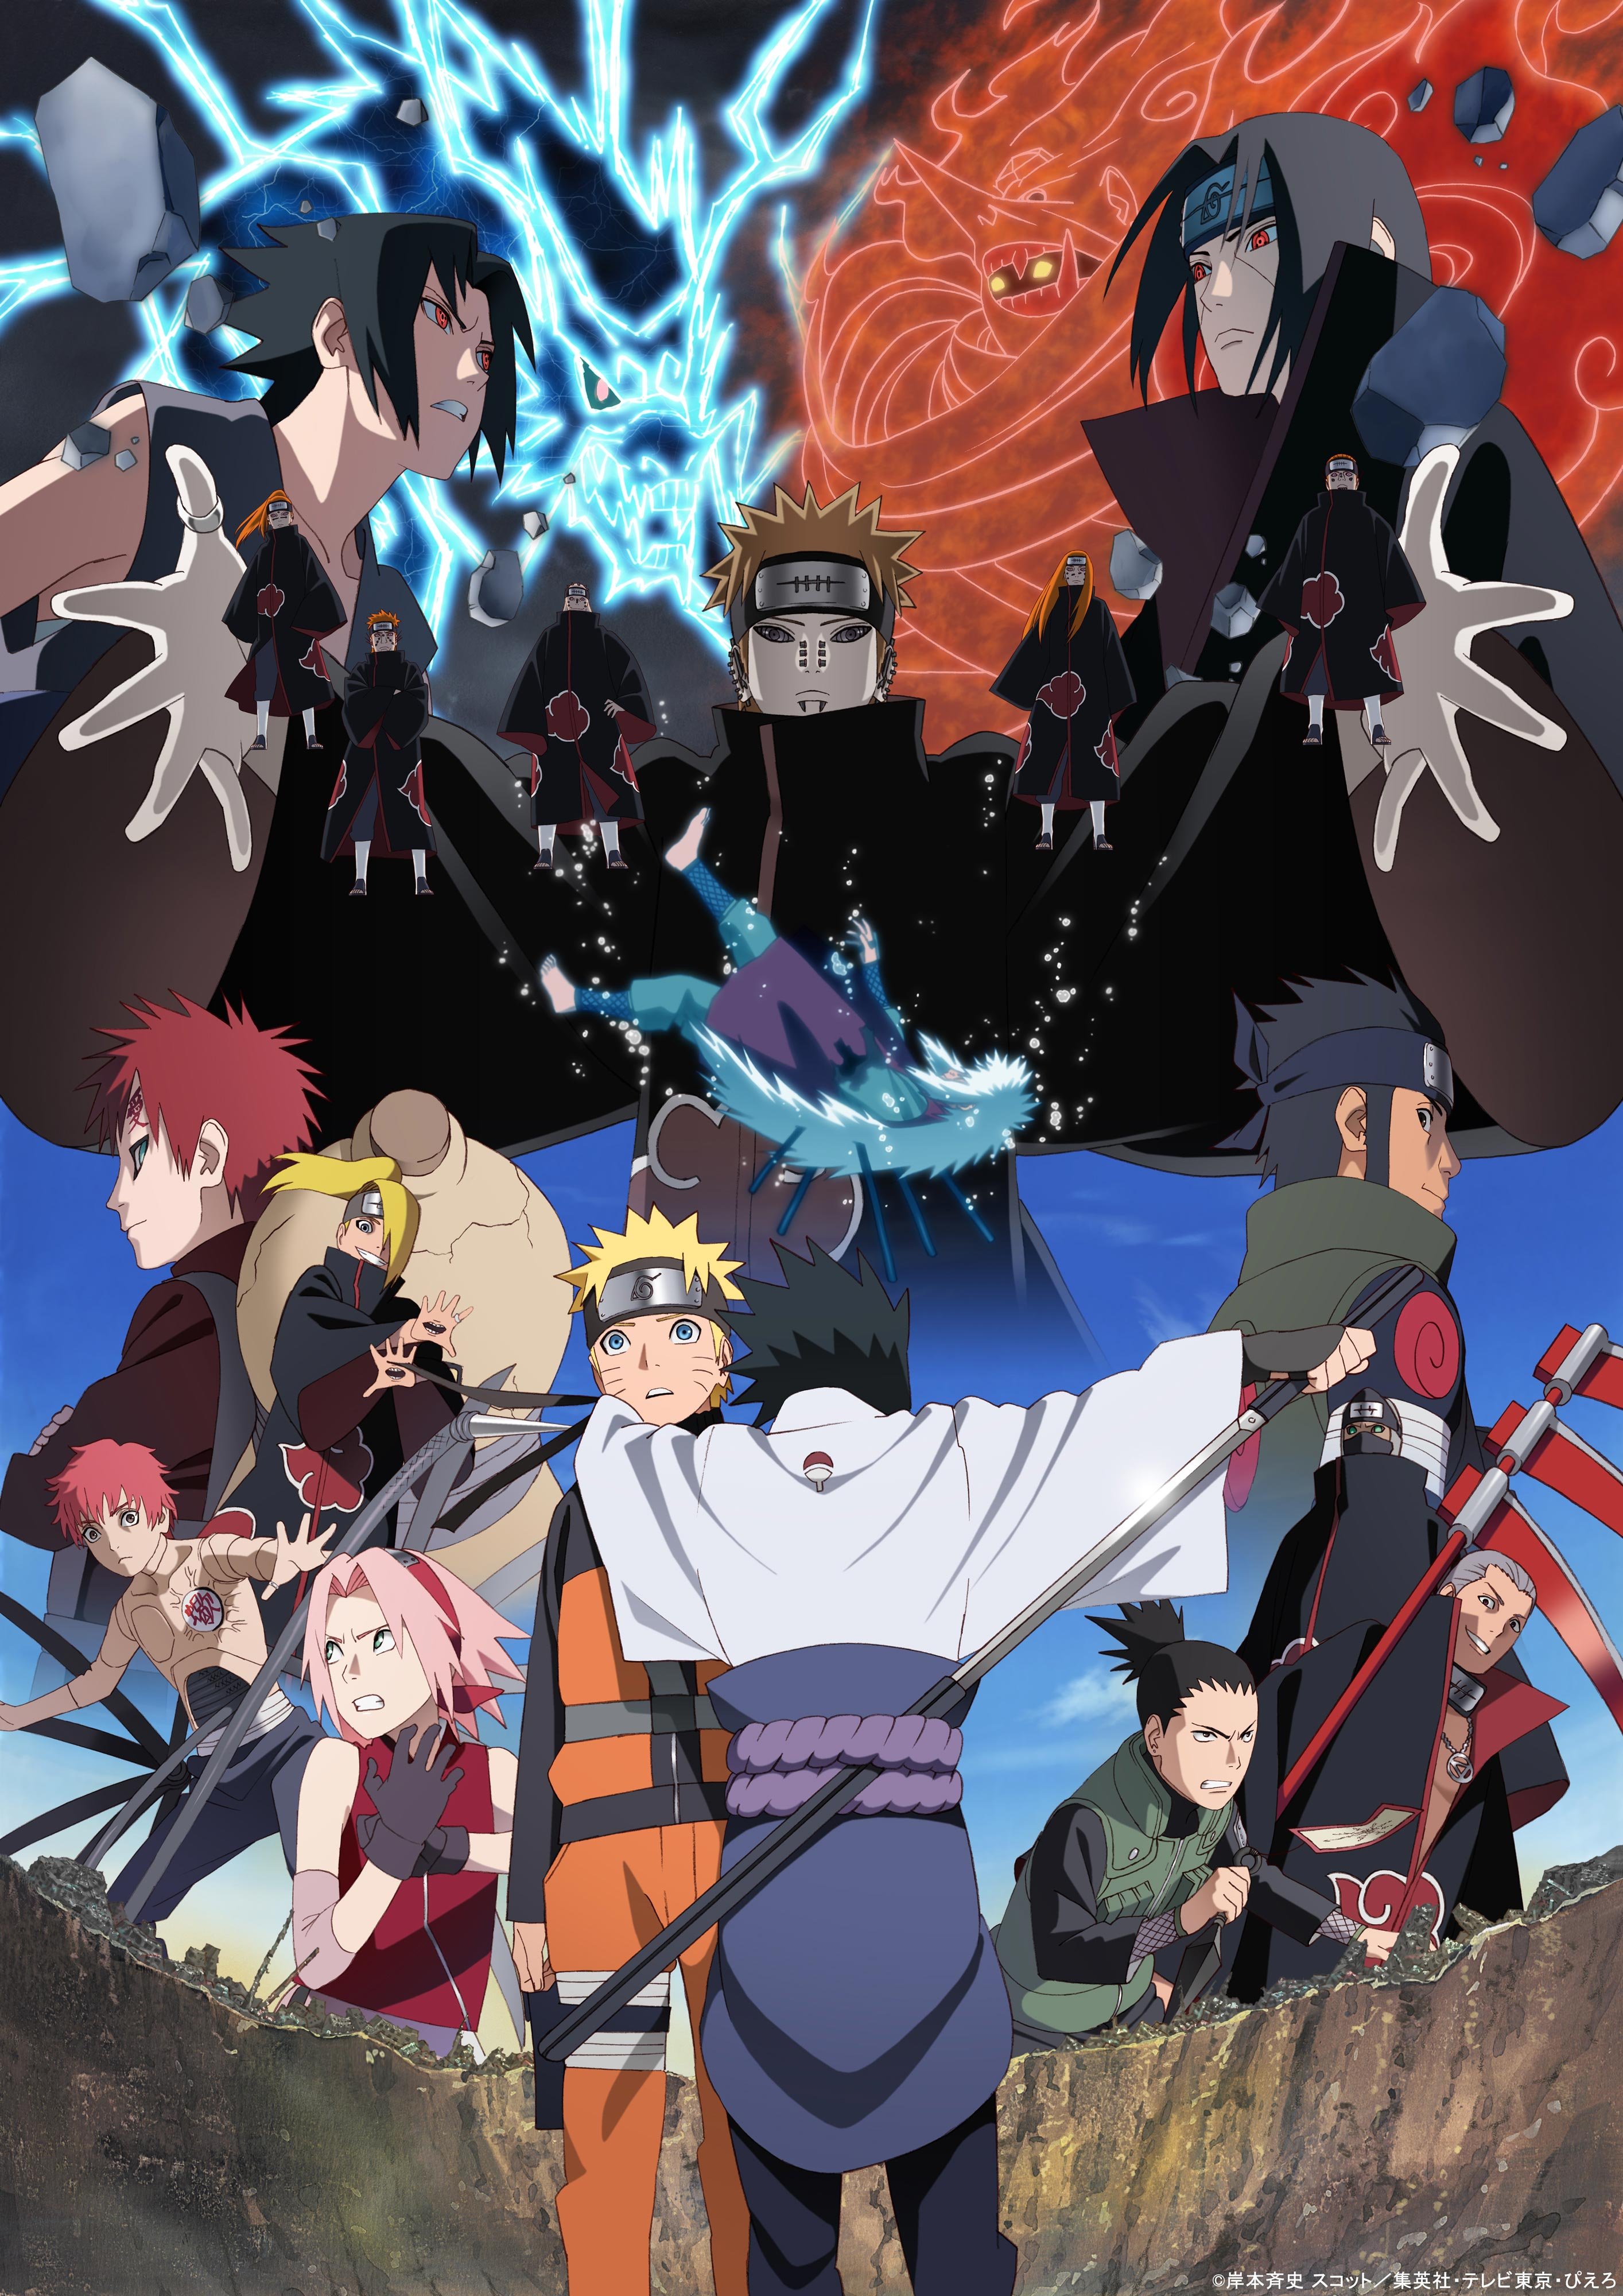 Fecha de estreno de los nuevos episodios de Naruto, por su 20